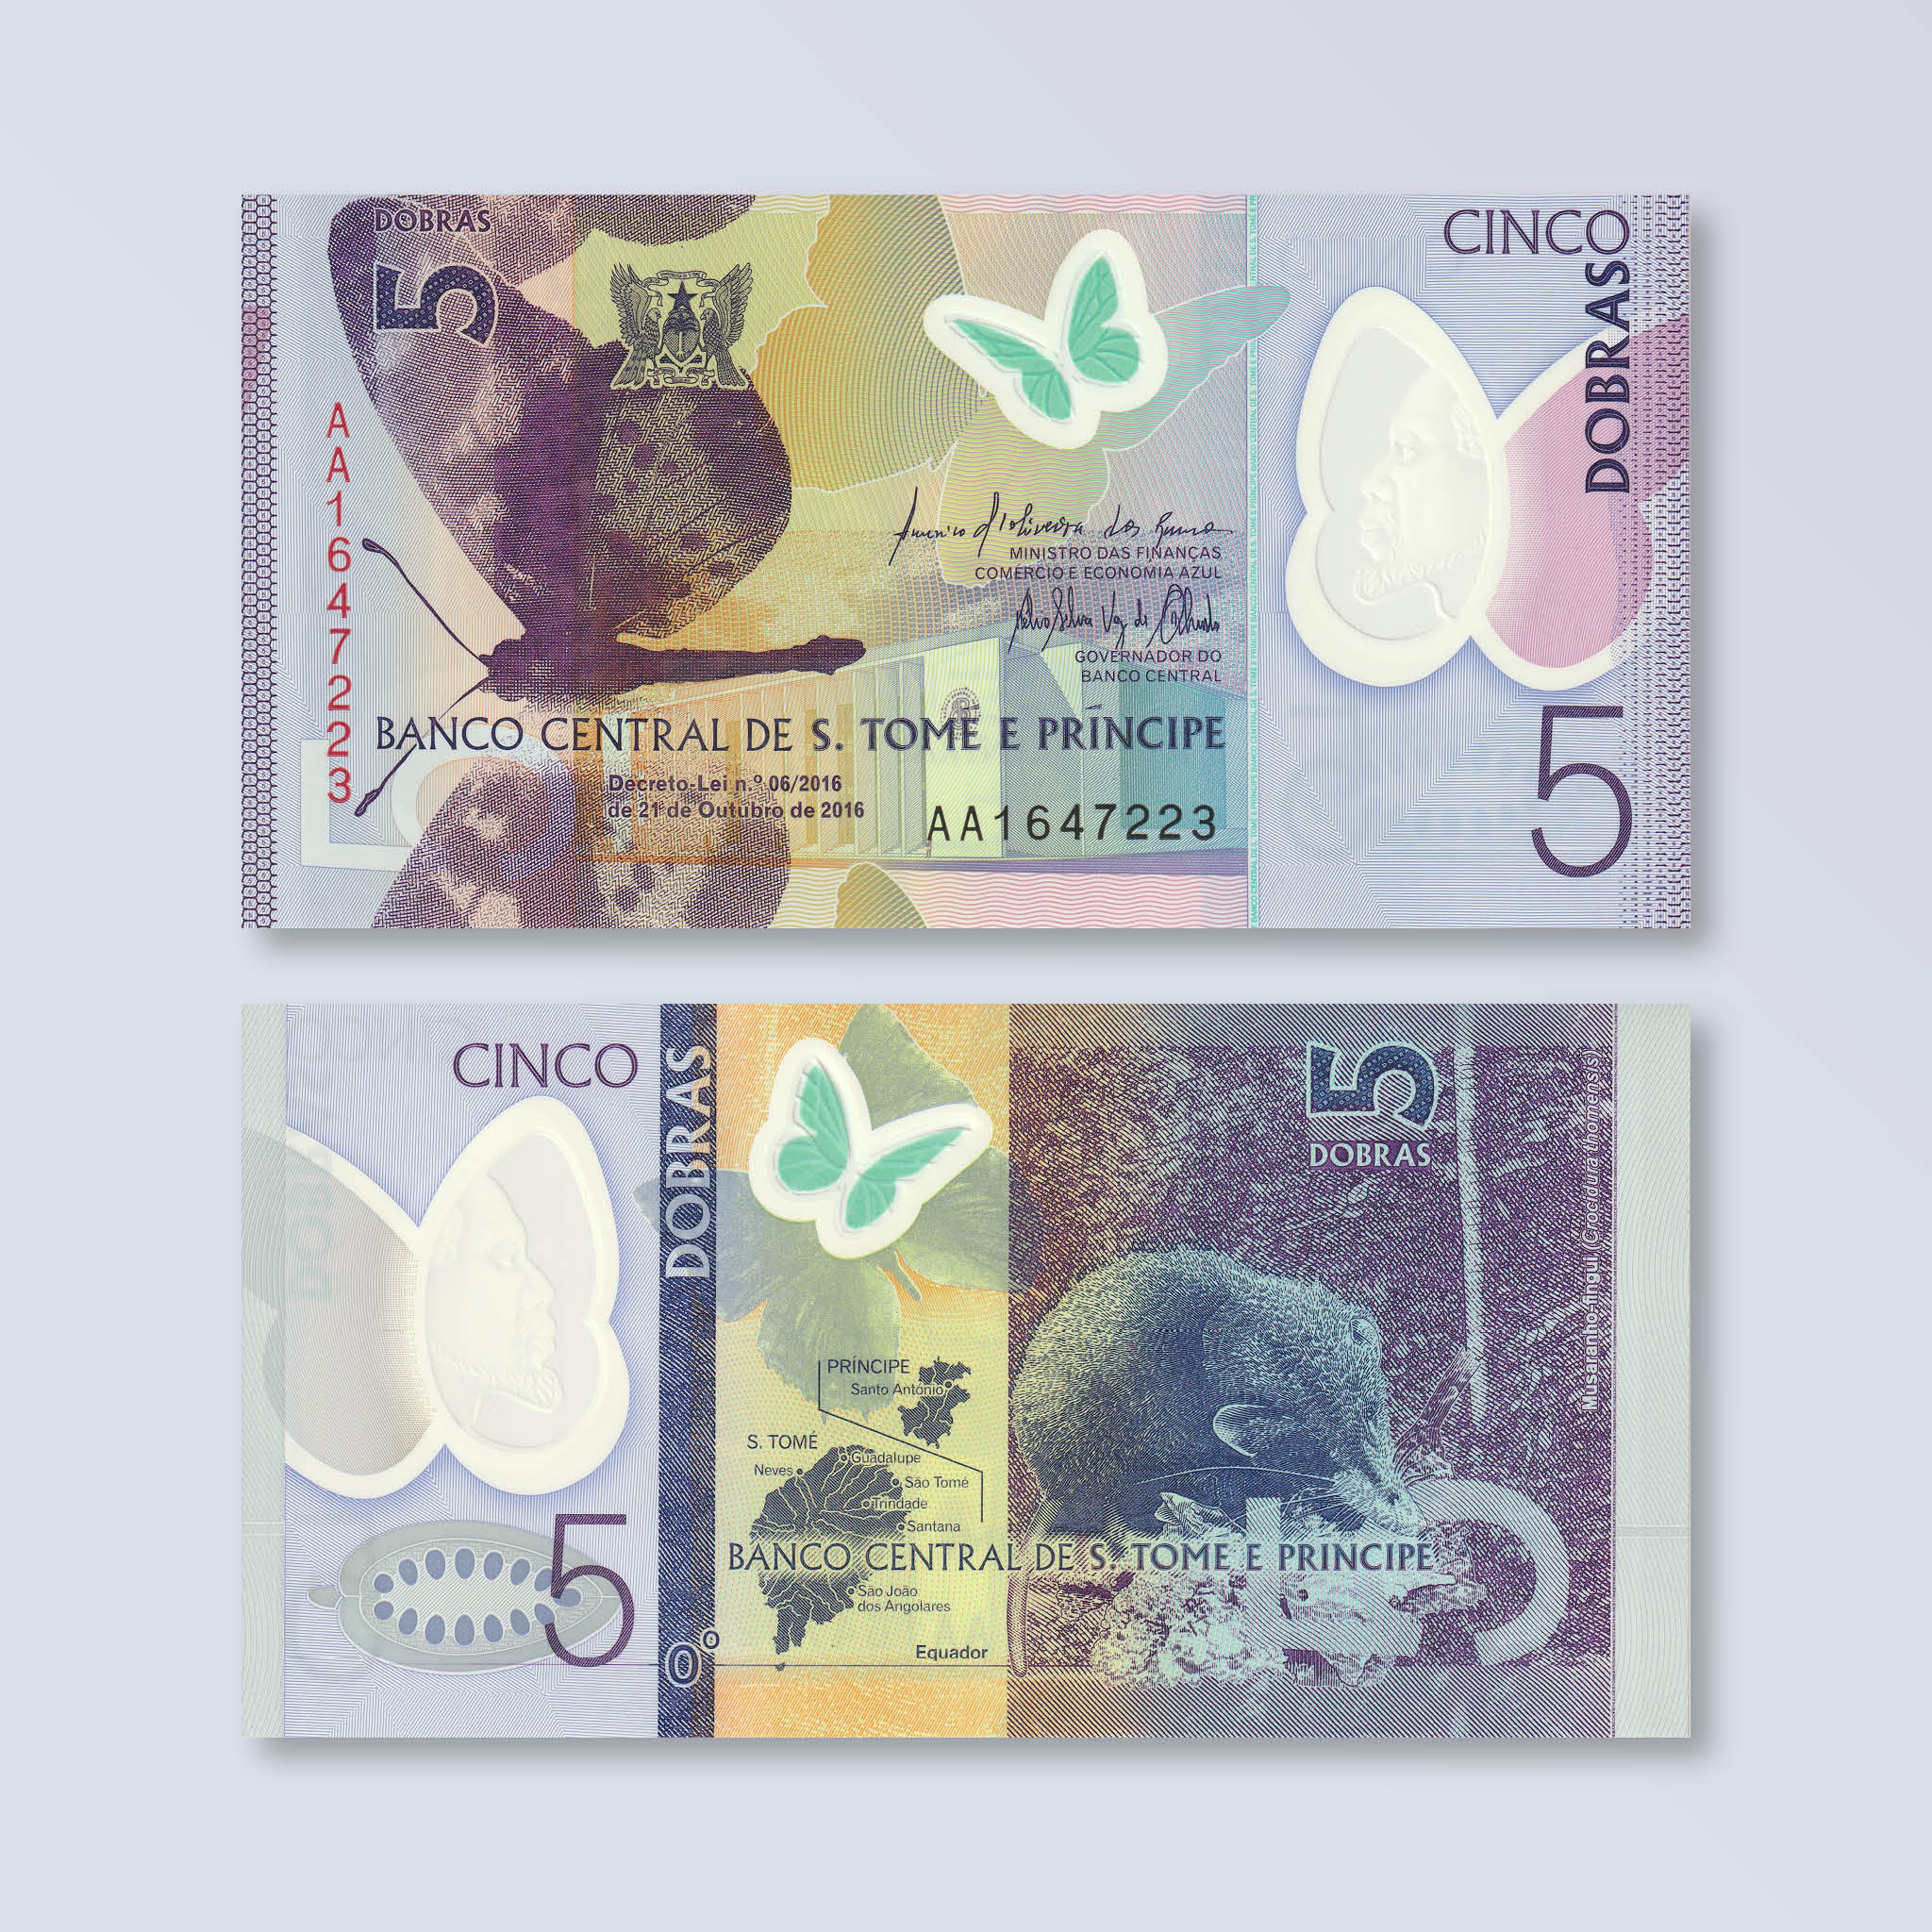 São Tomé & Príncipe 5 Dobras, 2016 (2018), B308a, P70, UNC - Robert's World Money - World Banknotes